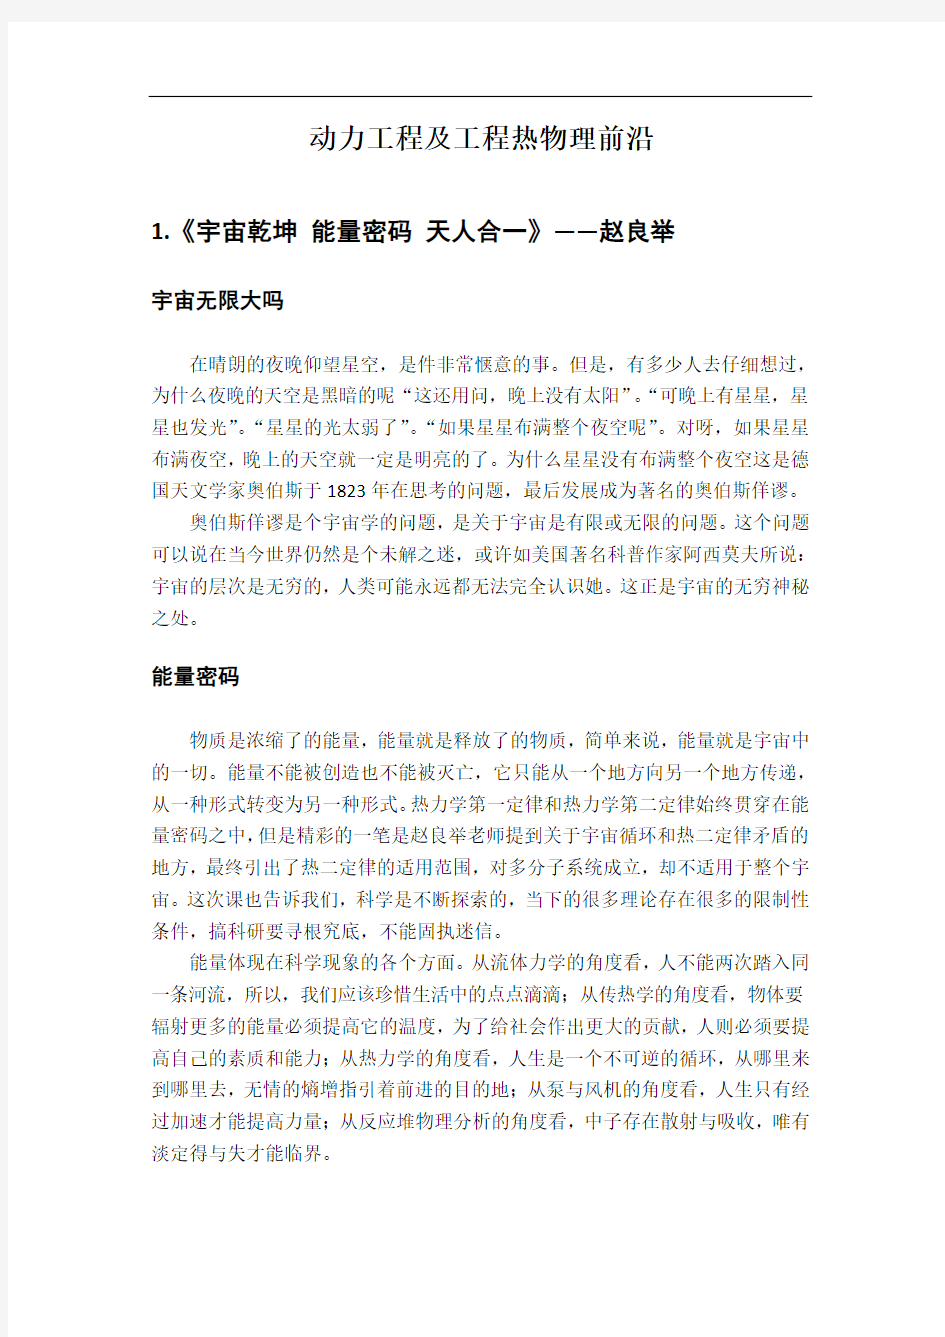 重庆大学动力工程及工程热物理前沿课报告